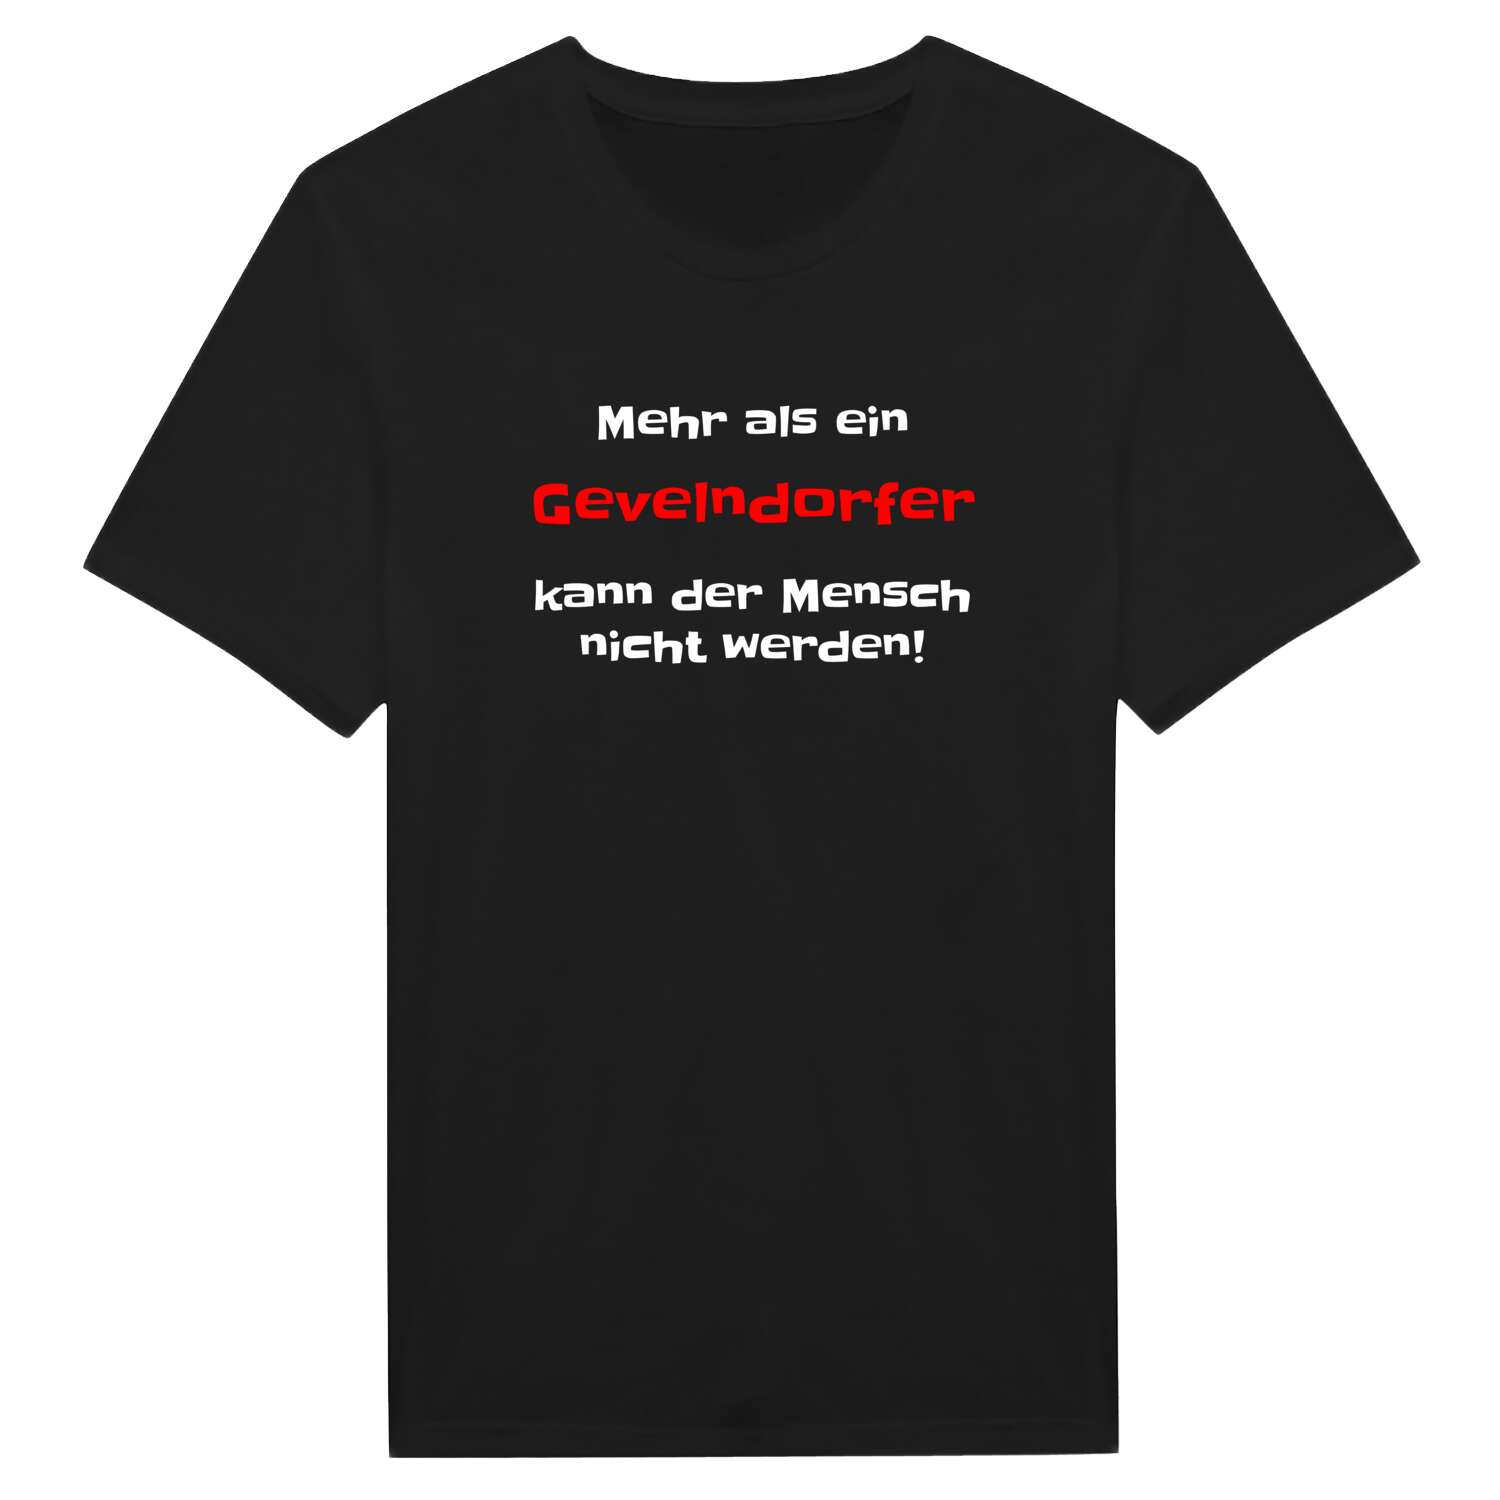 Gevelndorf T-Shirt »Mehr als ein«